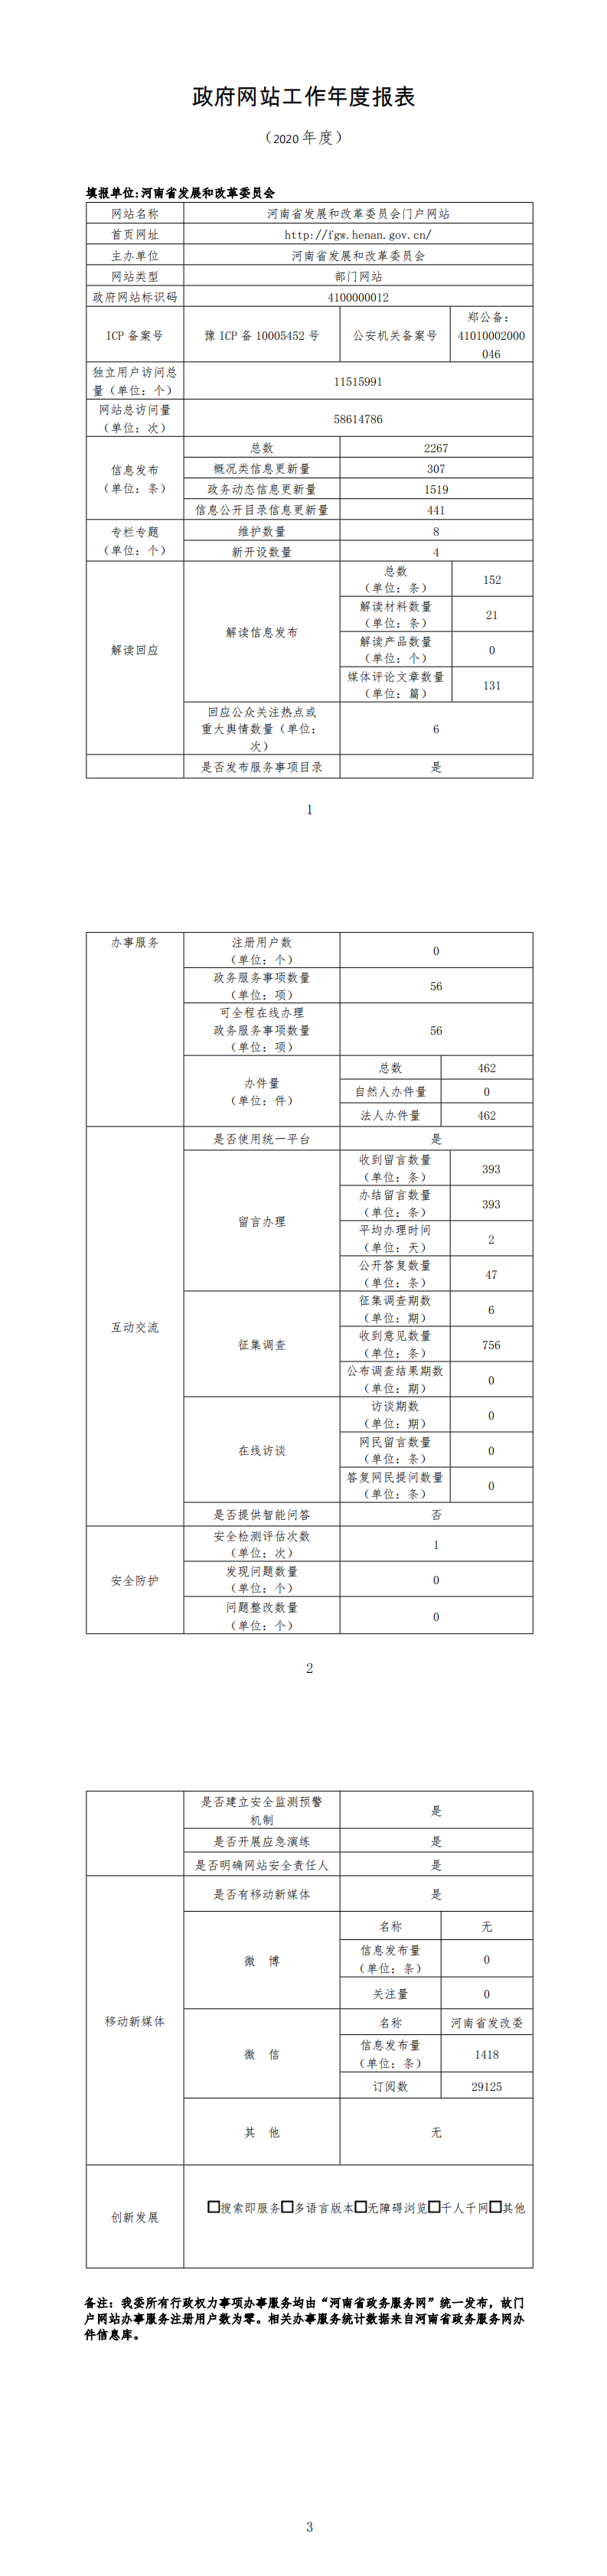 河南省发展和改革委员会政府网站2020年度工作报表